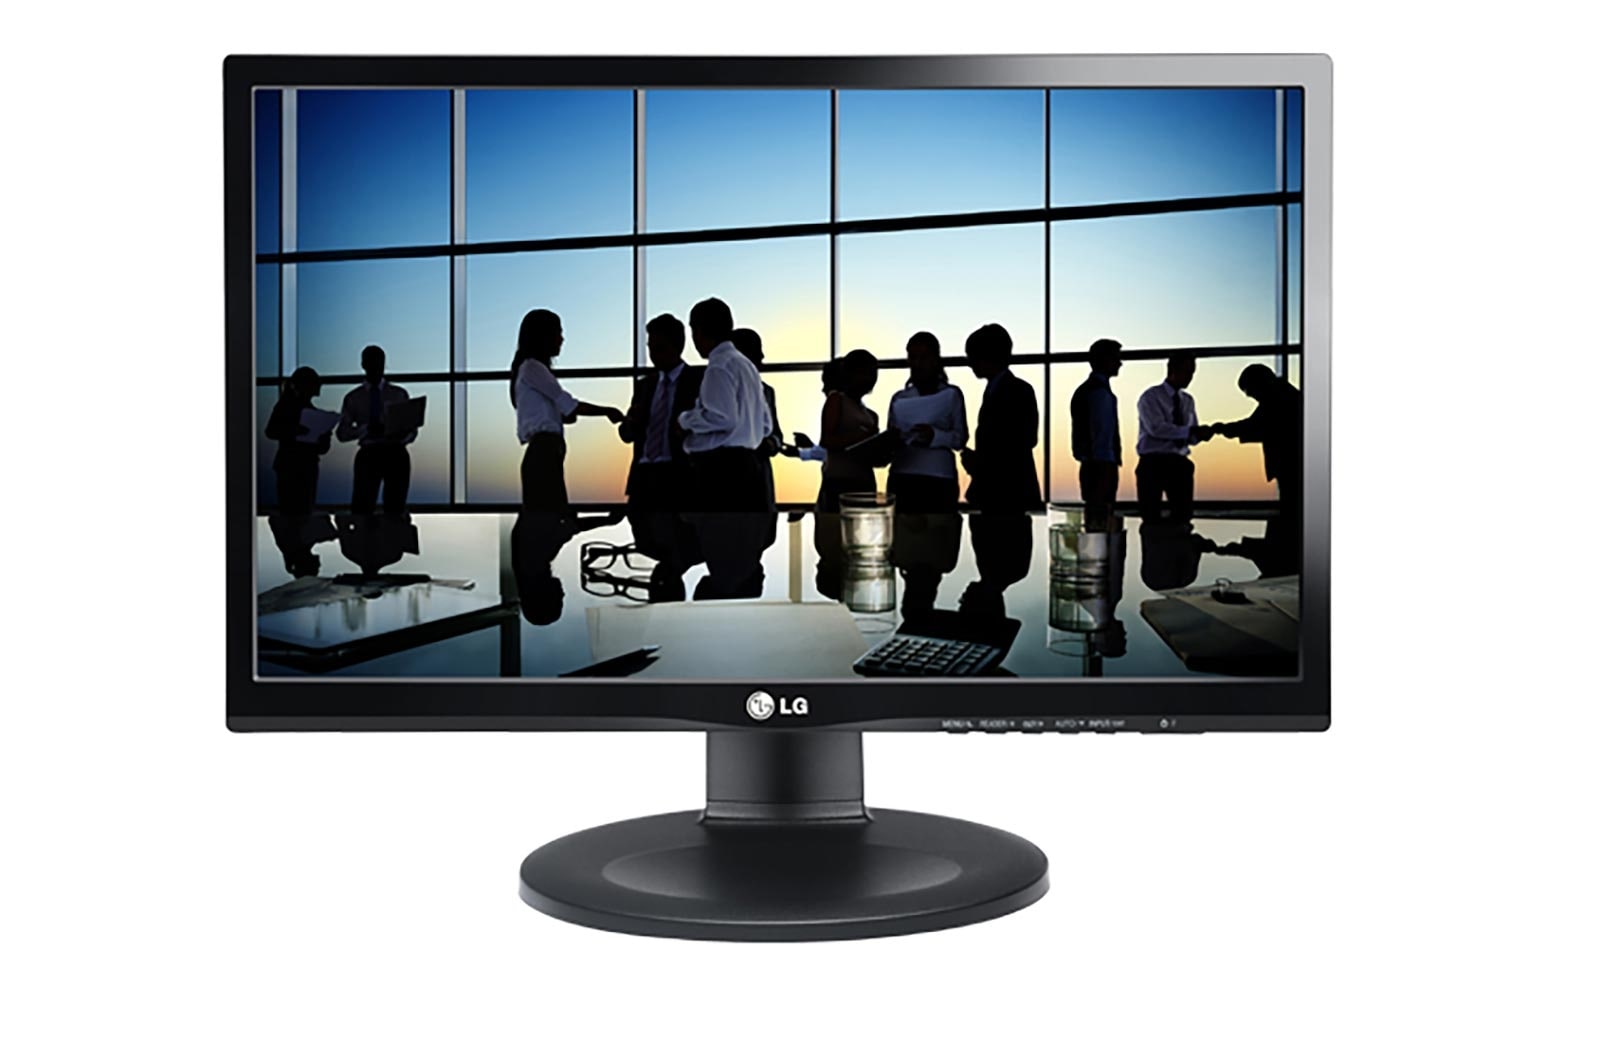 LG 22" FHD Descubra a beleza vibrante com o monitor LG IPS., 22BN550Y-B